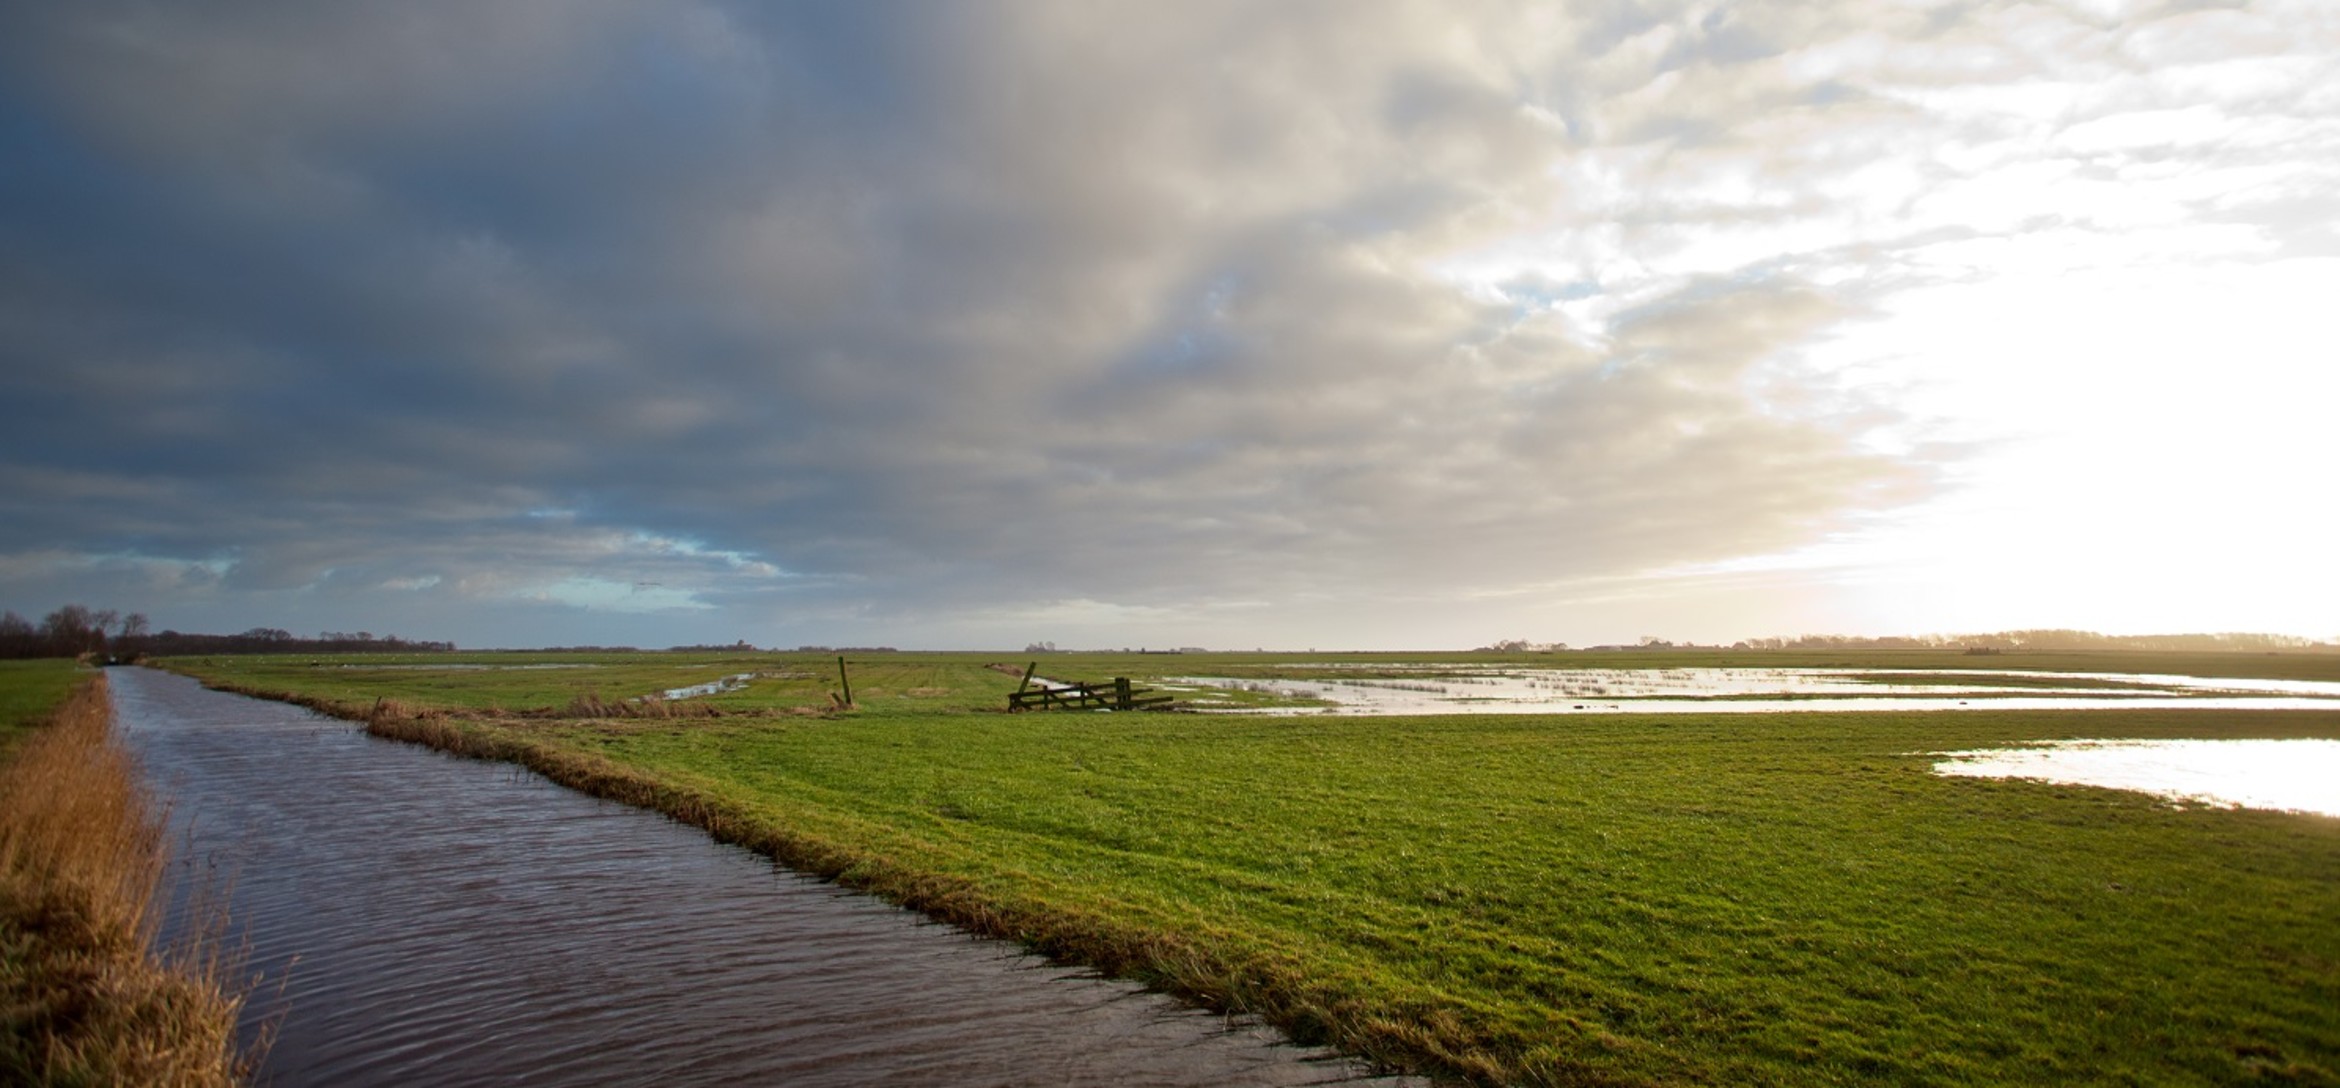 Foto van een weids landschap met een brede sloot naast een weiland waar ook veel water op ligt